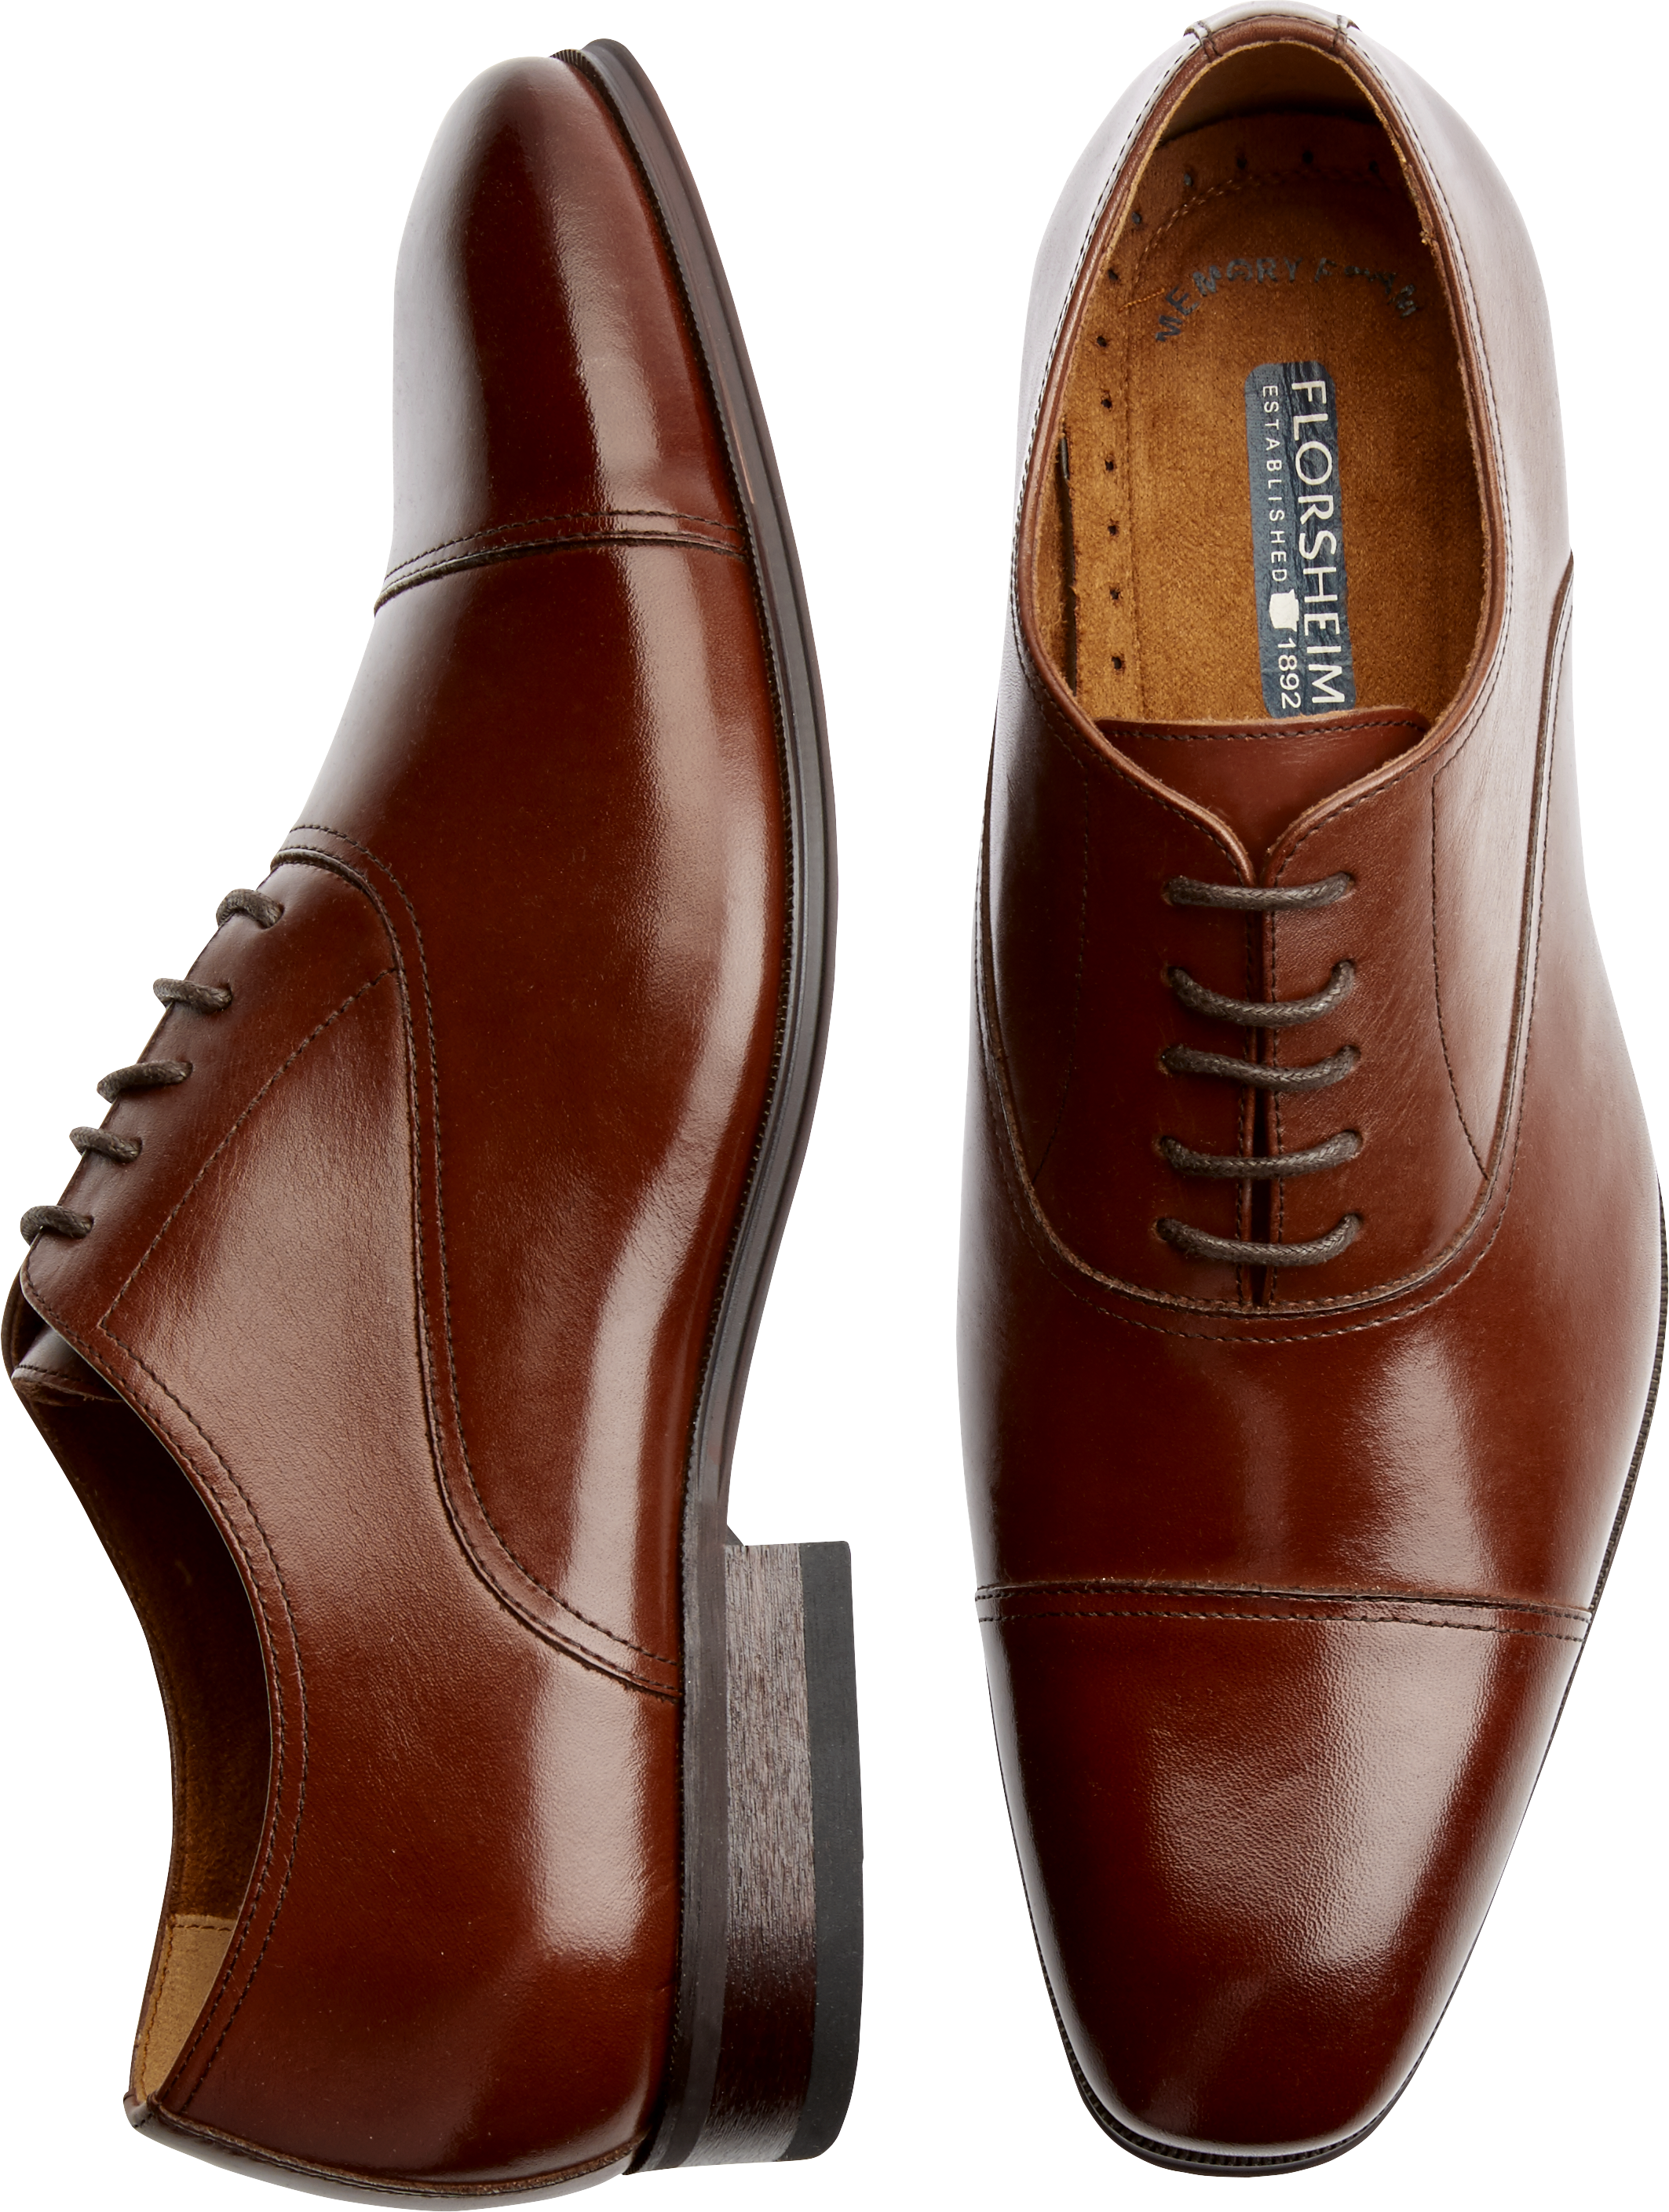 Florsheim Cap Toe Oxfords, Cognac - Men's Shoes | Men's